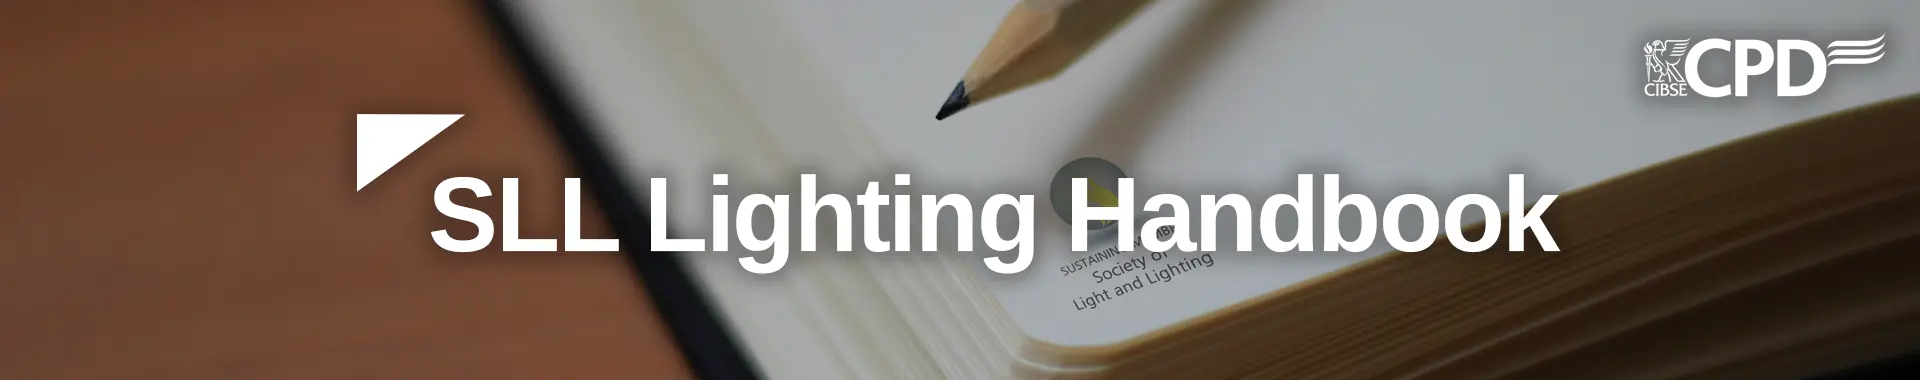 SLL Lighting Handbook CPD